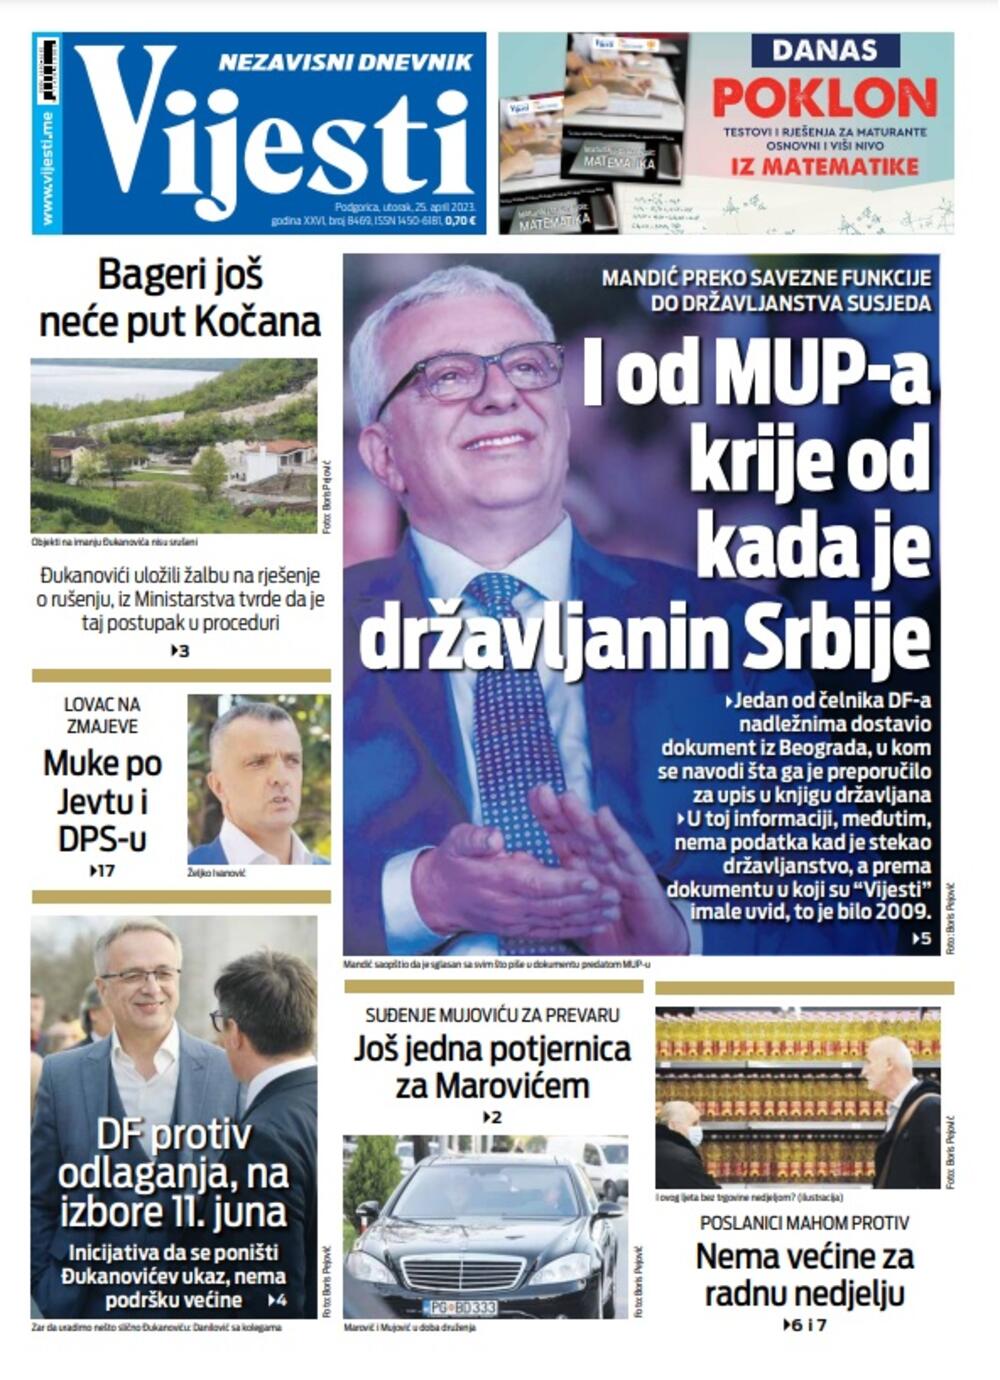 Naslovna strana "Vijesti" za 25. april 2023. godine, Foto: Vijesti